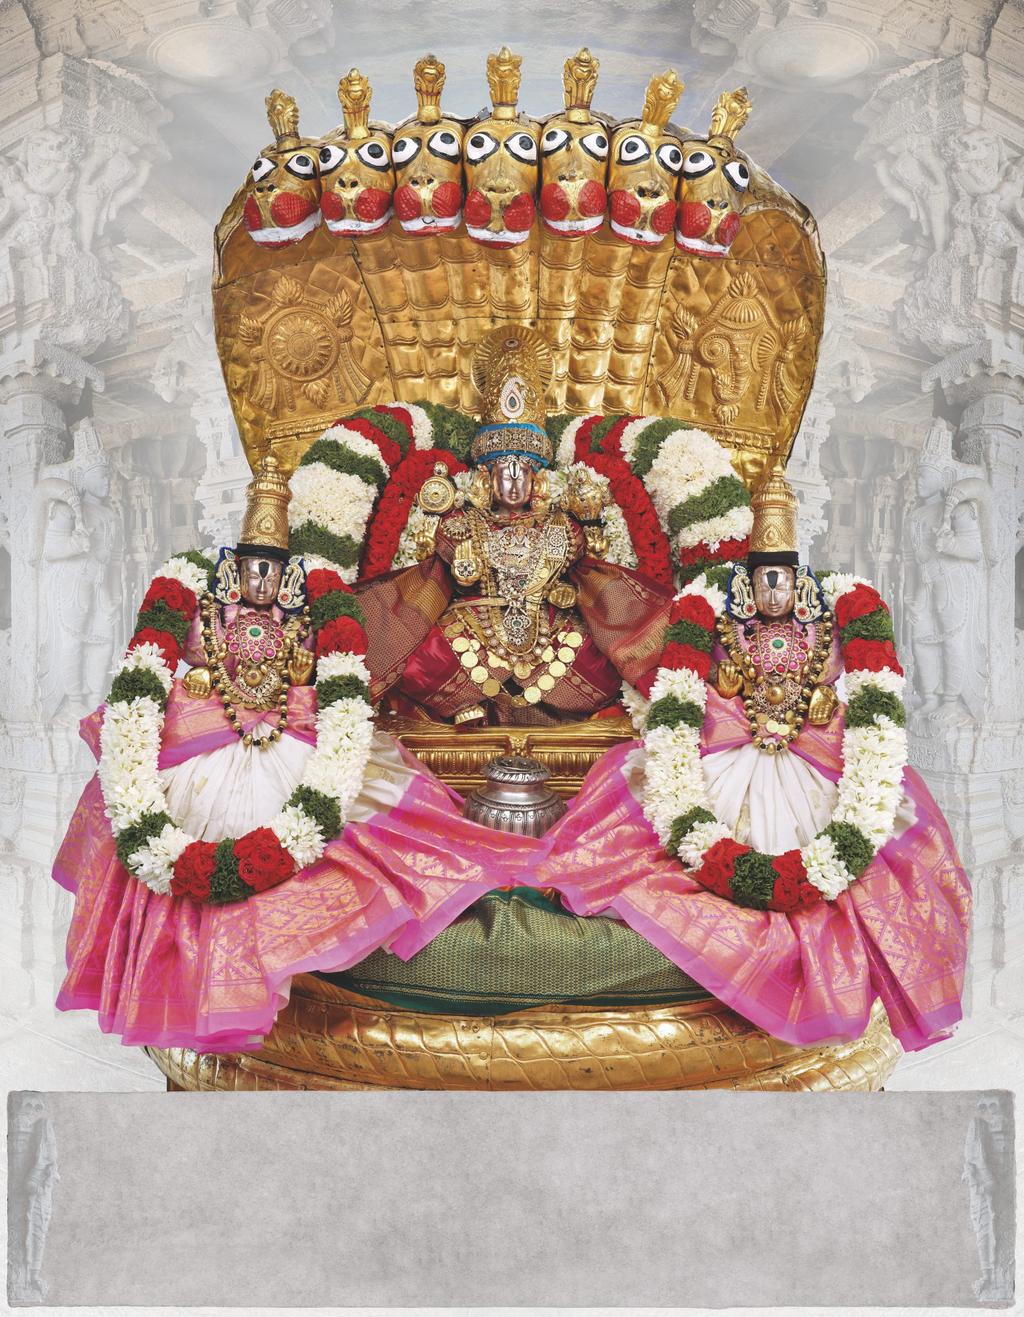 Tirumala Devasthanams June 2017 Sri Govindaraja Swamivari Peddasesha Vahanaseva, 1 2 3 4 5 6 7 8 9 10 11 12 13 14 15 16 17 18 19 20 21 22 23 24 25 26 27 28 29 30 Important Days : 5 Ekadasi, Sri PAT